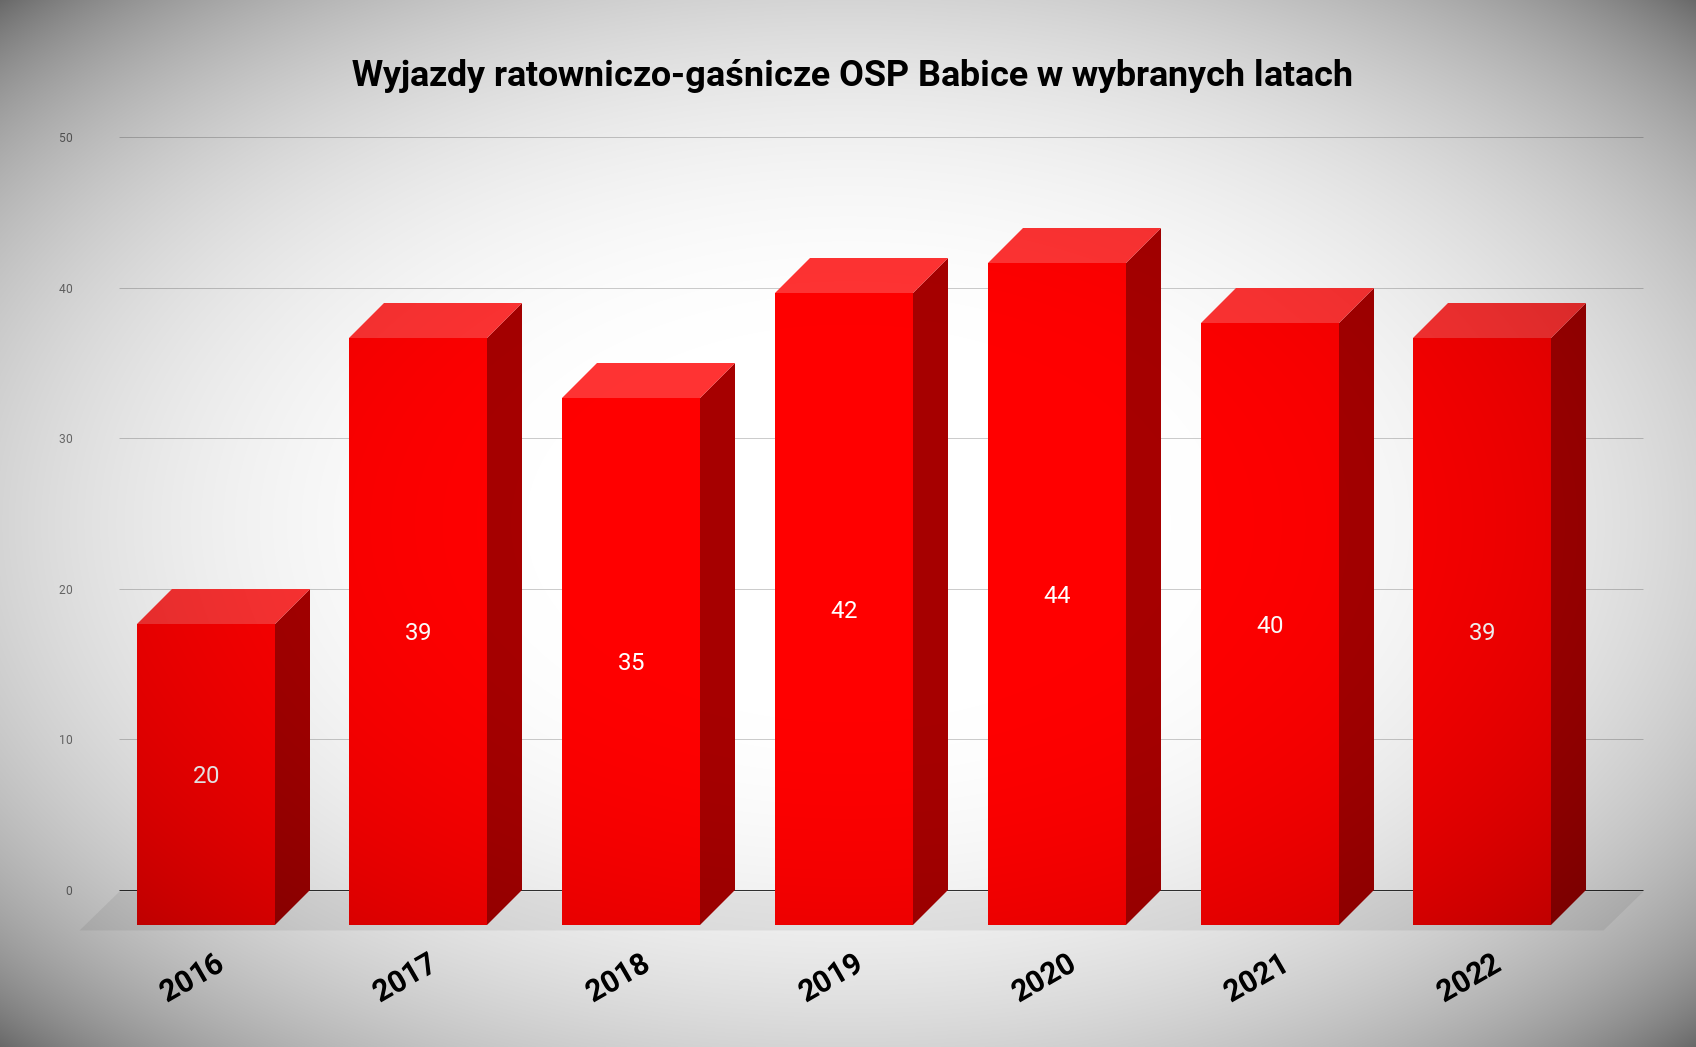 _Wyjazdy ratowniczo-gaśnicze OSP Babice w wybranych latach (2)